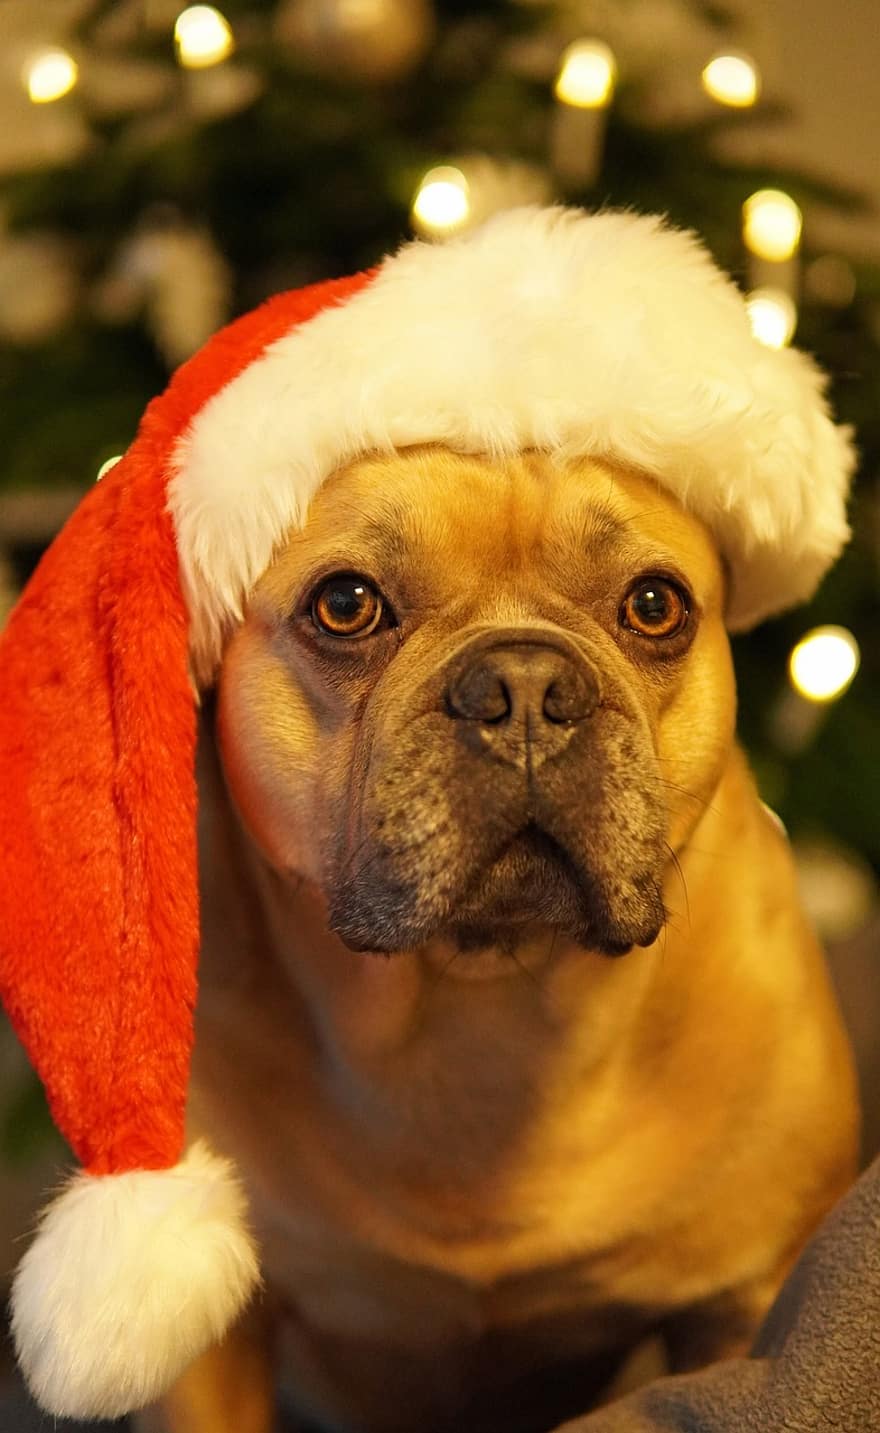 chó, Chó bun pháp, giáng sinh, kỳ nghỉ vui vẻ, mệt mỏi, nhắm mắt lại, mũ ông già Noel, cây giáng sinh, cây linh sam, thiệp mừng, dễ thương